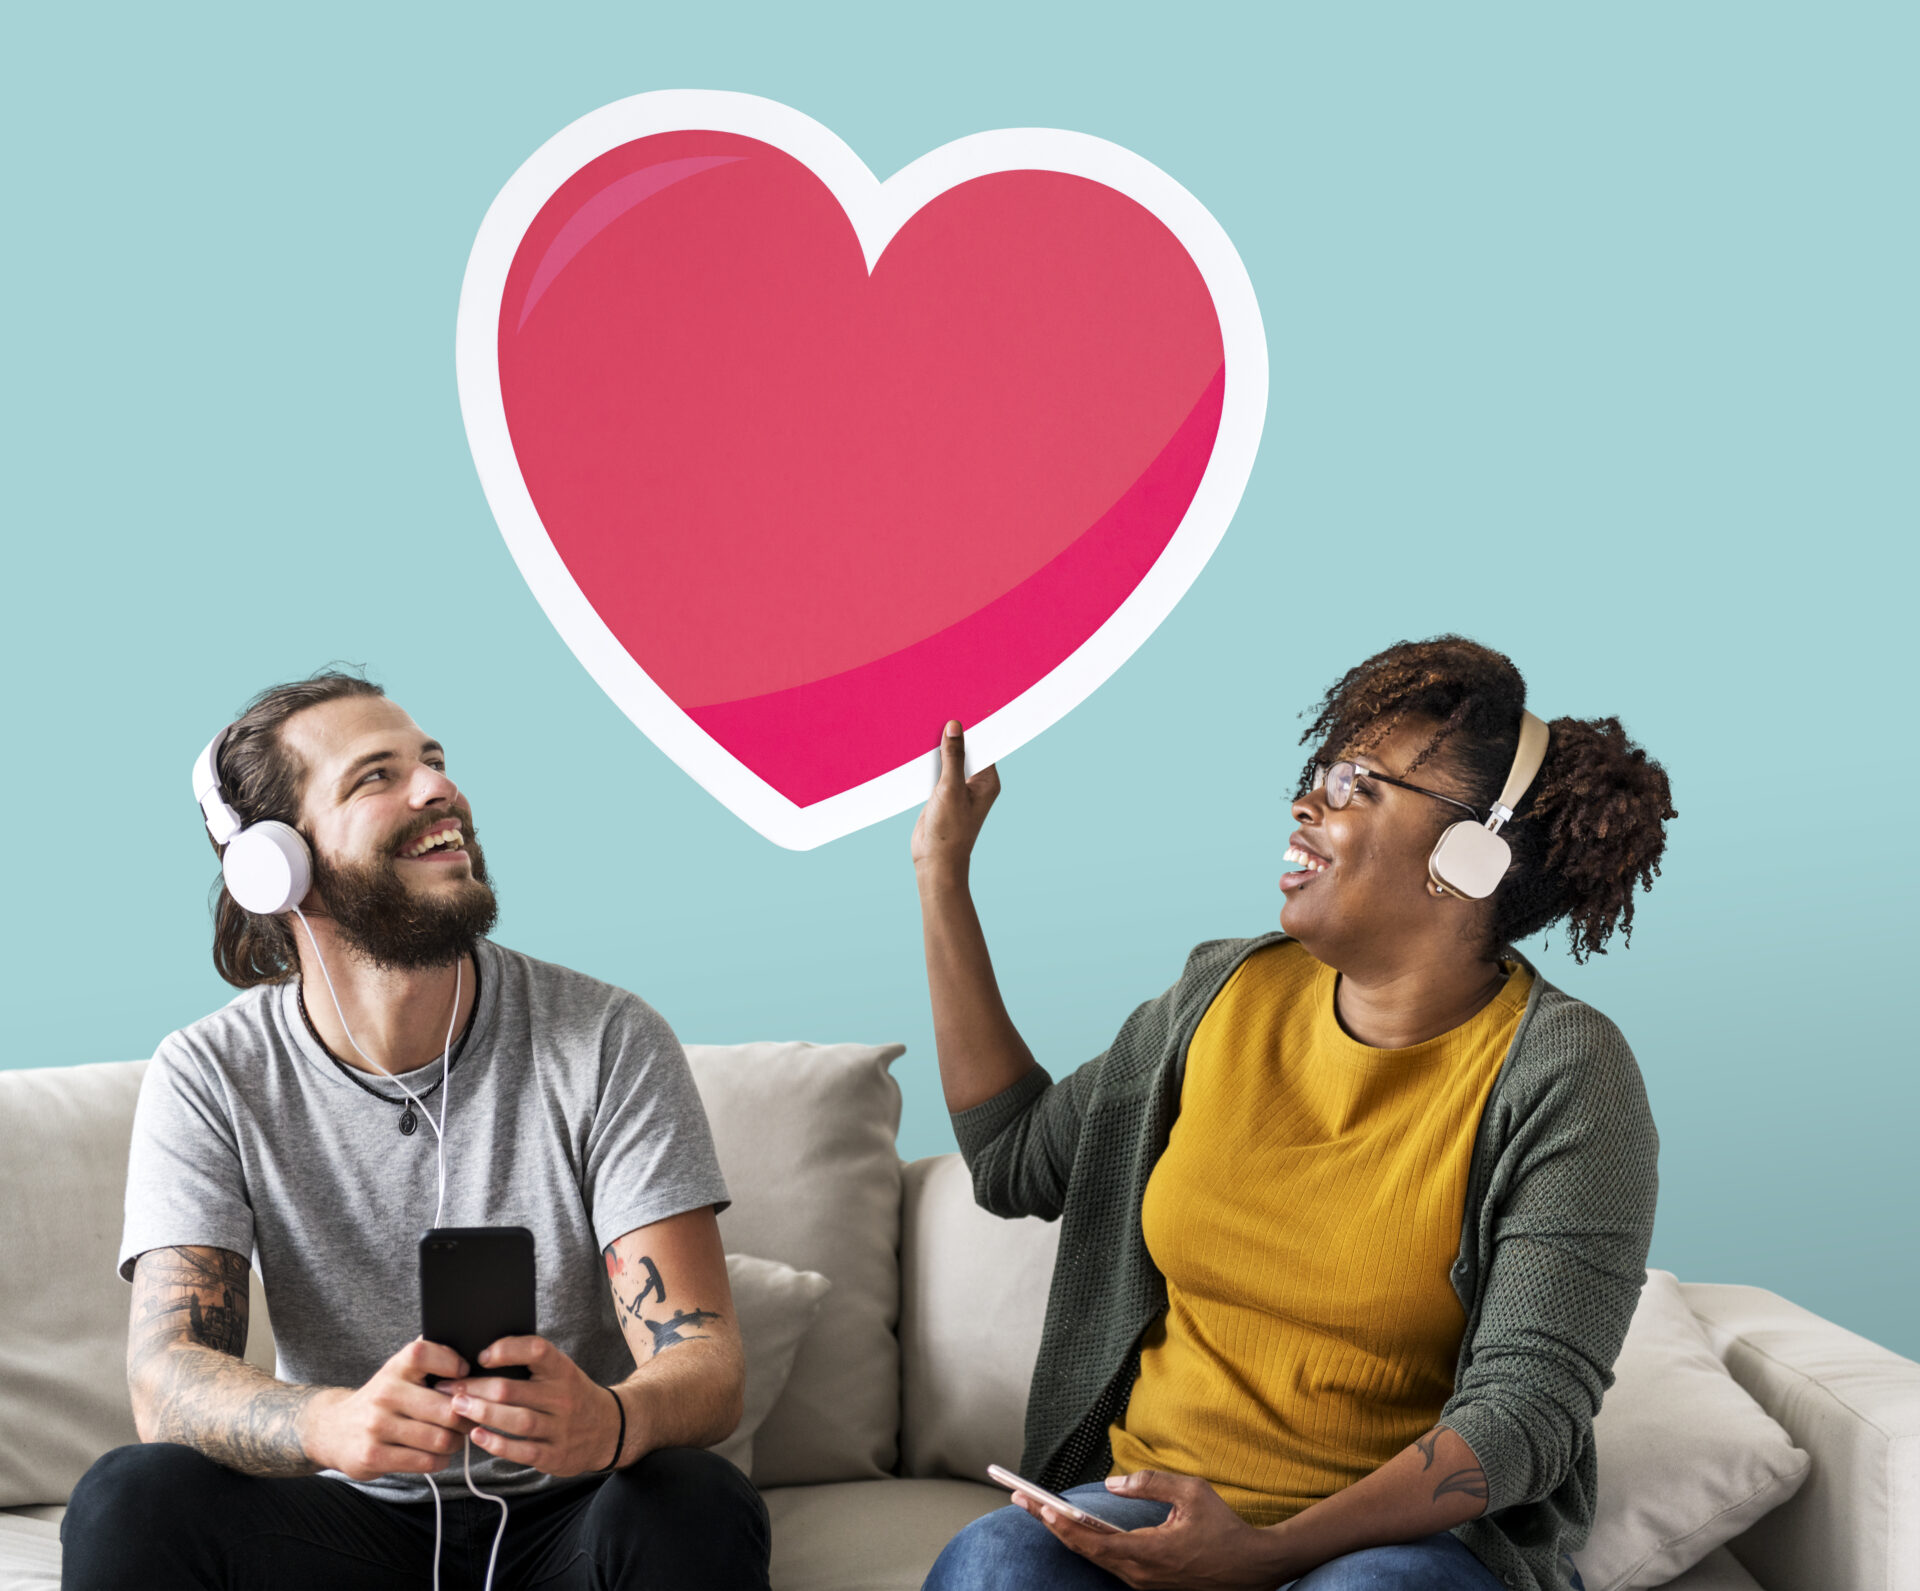 Aplicativos de Relacionamento: Melhores Opções para Encontrar um Amor!